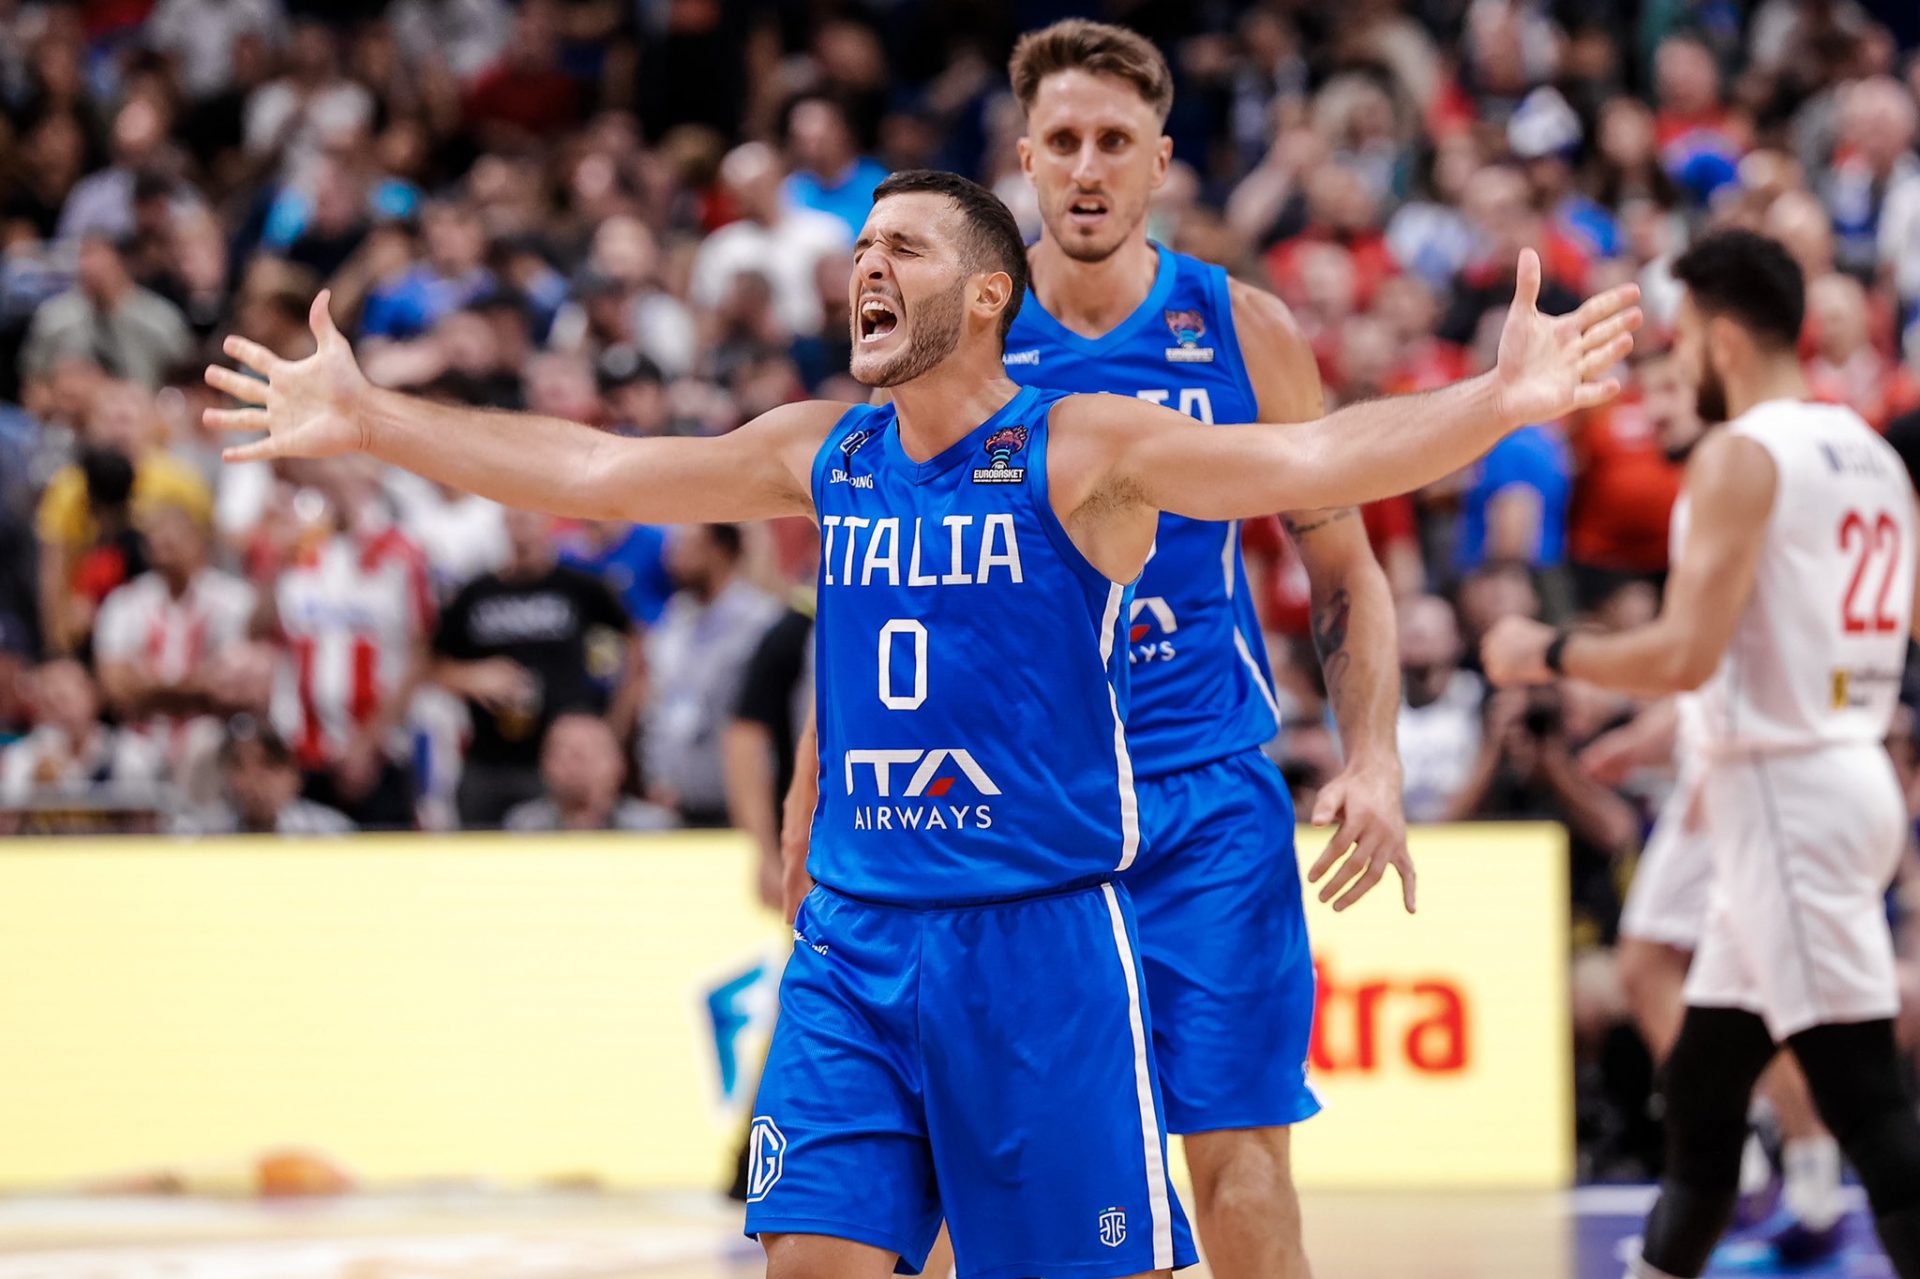 Basket: nell’Italia che trionfa sulla Serbia brilla l’ex Viola Marco Spissu